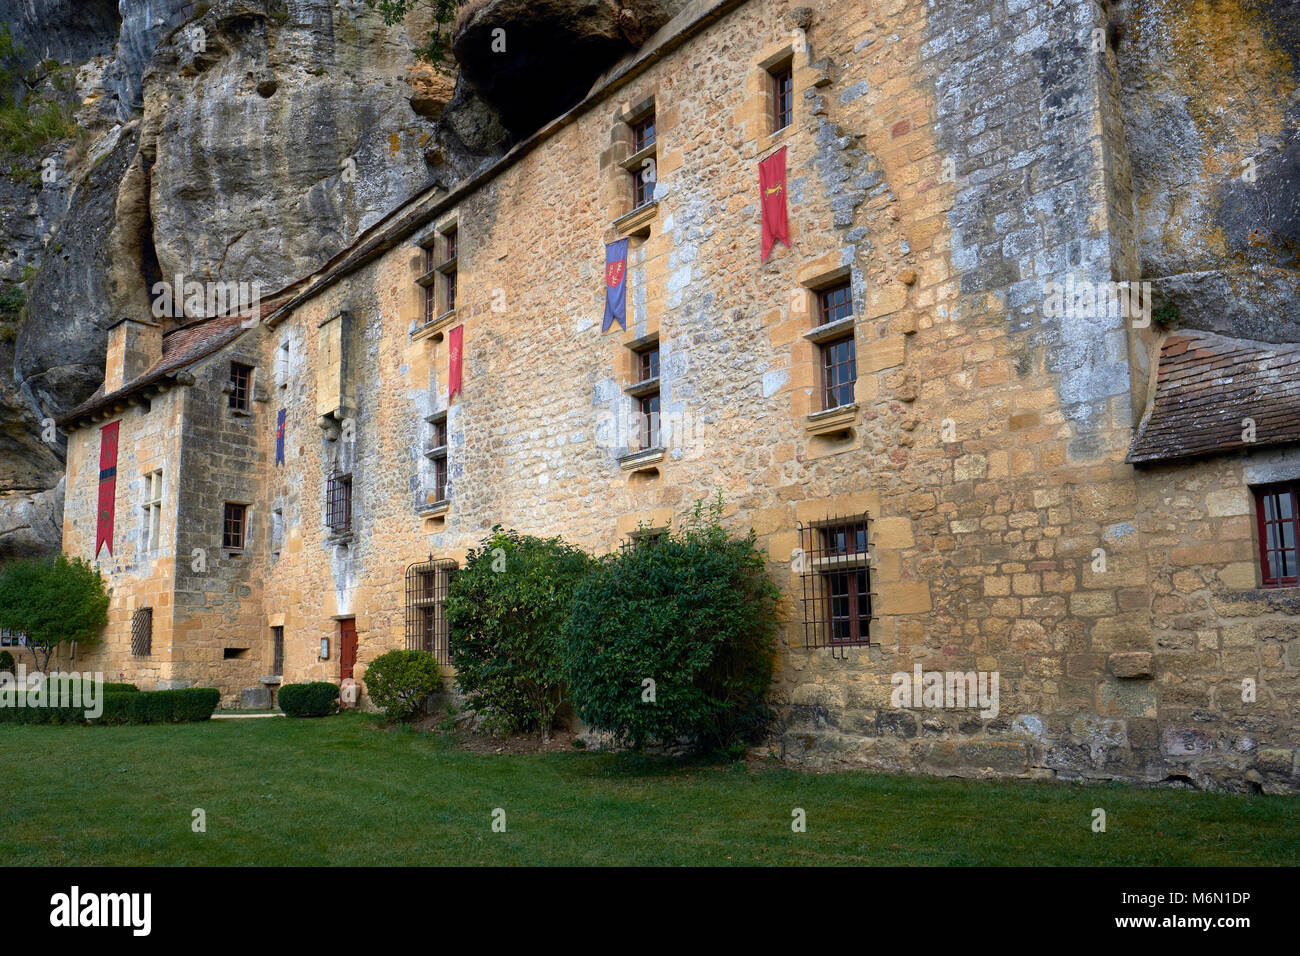 Die befestigte Manor house Maison Forte de Reignac in der Dordogne, in den Kalkstein Felswand in der Vezere Tal Frankreich gebaut wurde. Stockfoto